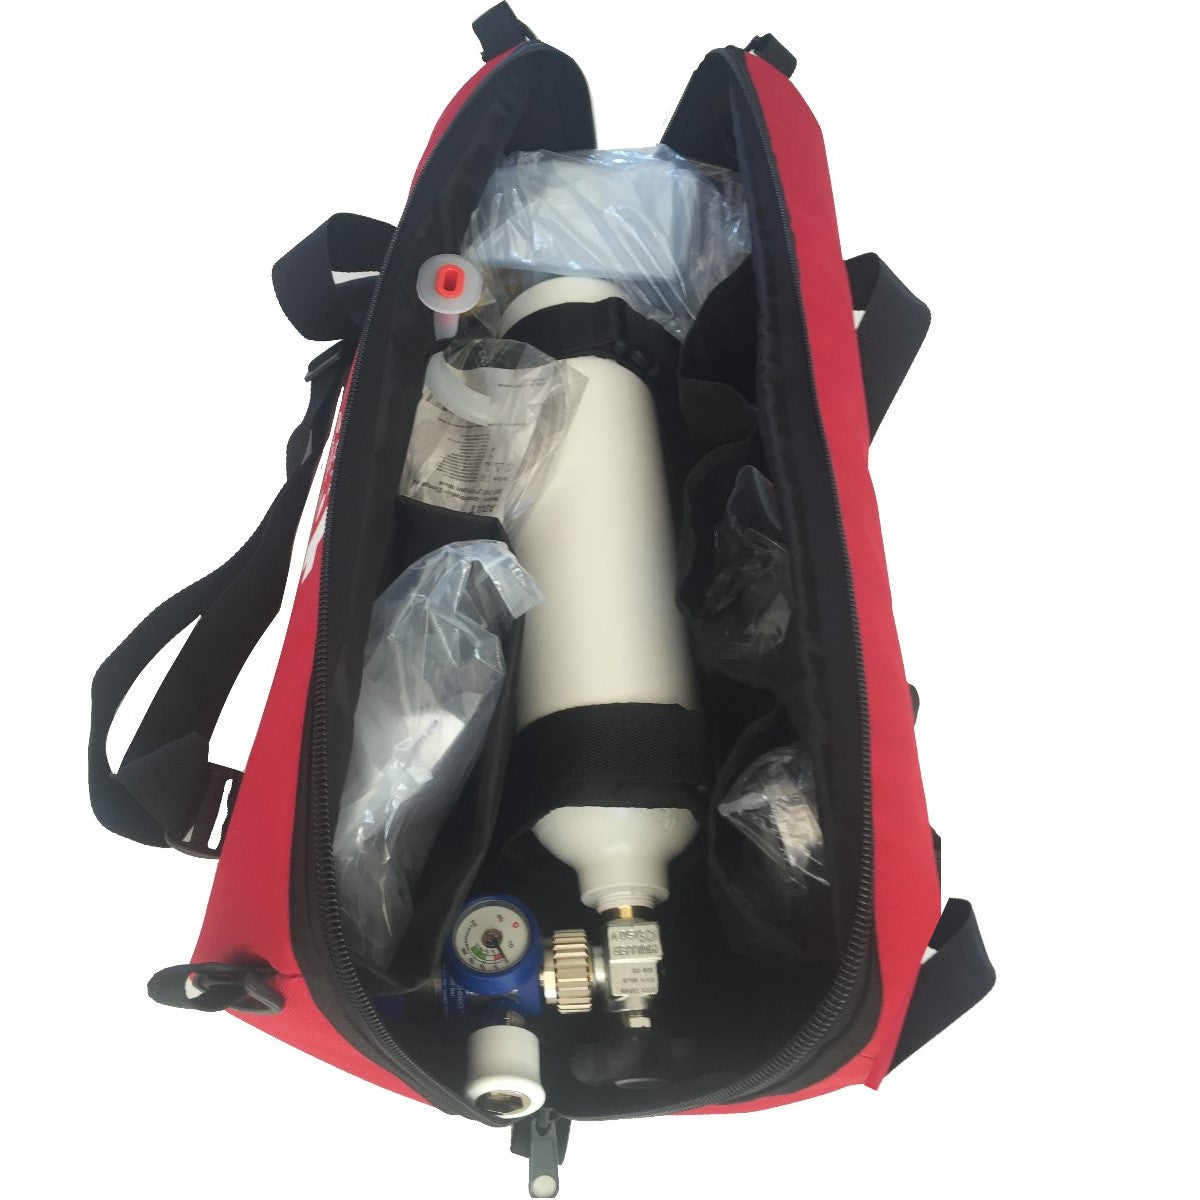 Oxygen Cylinder Bag - Emergency Services Inside